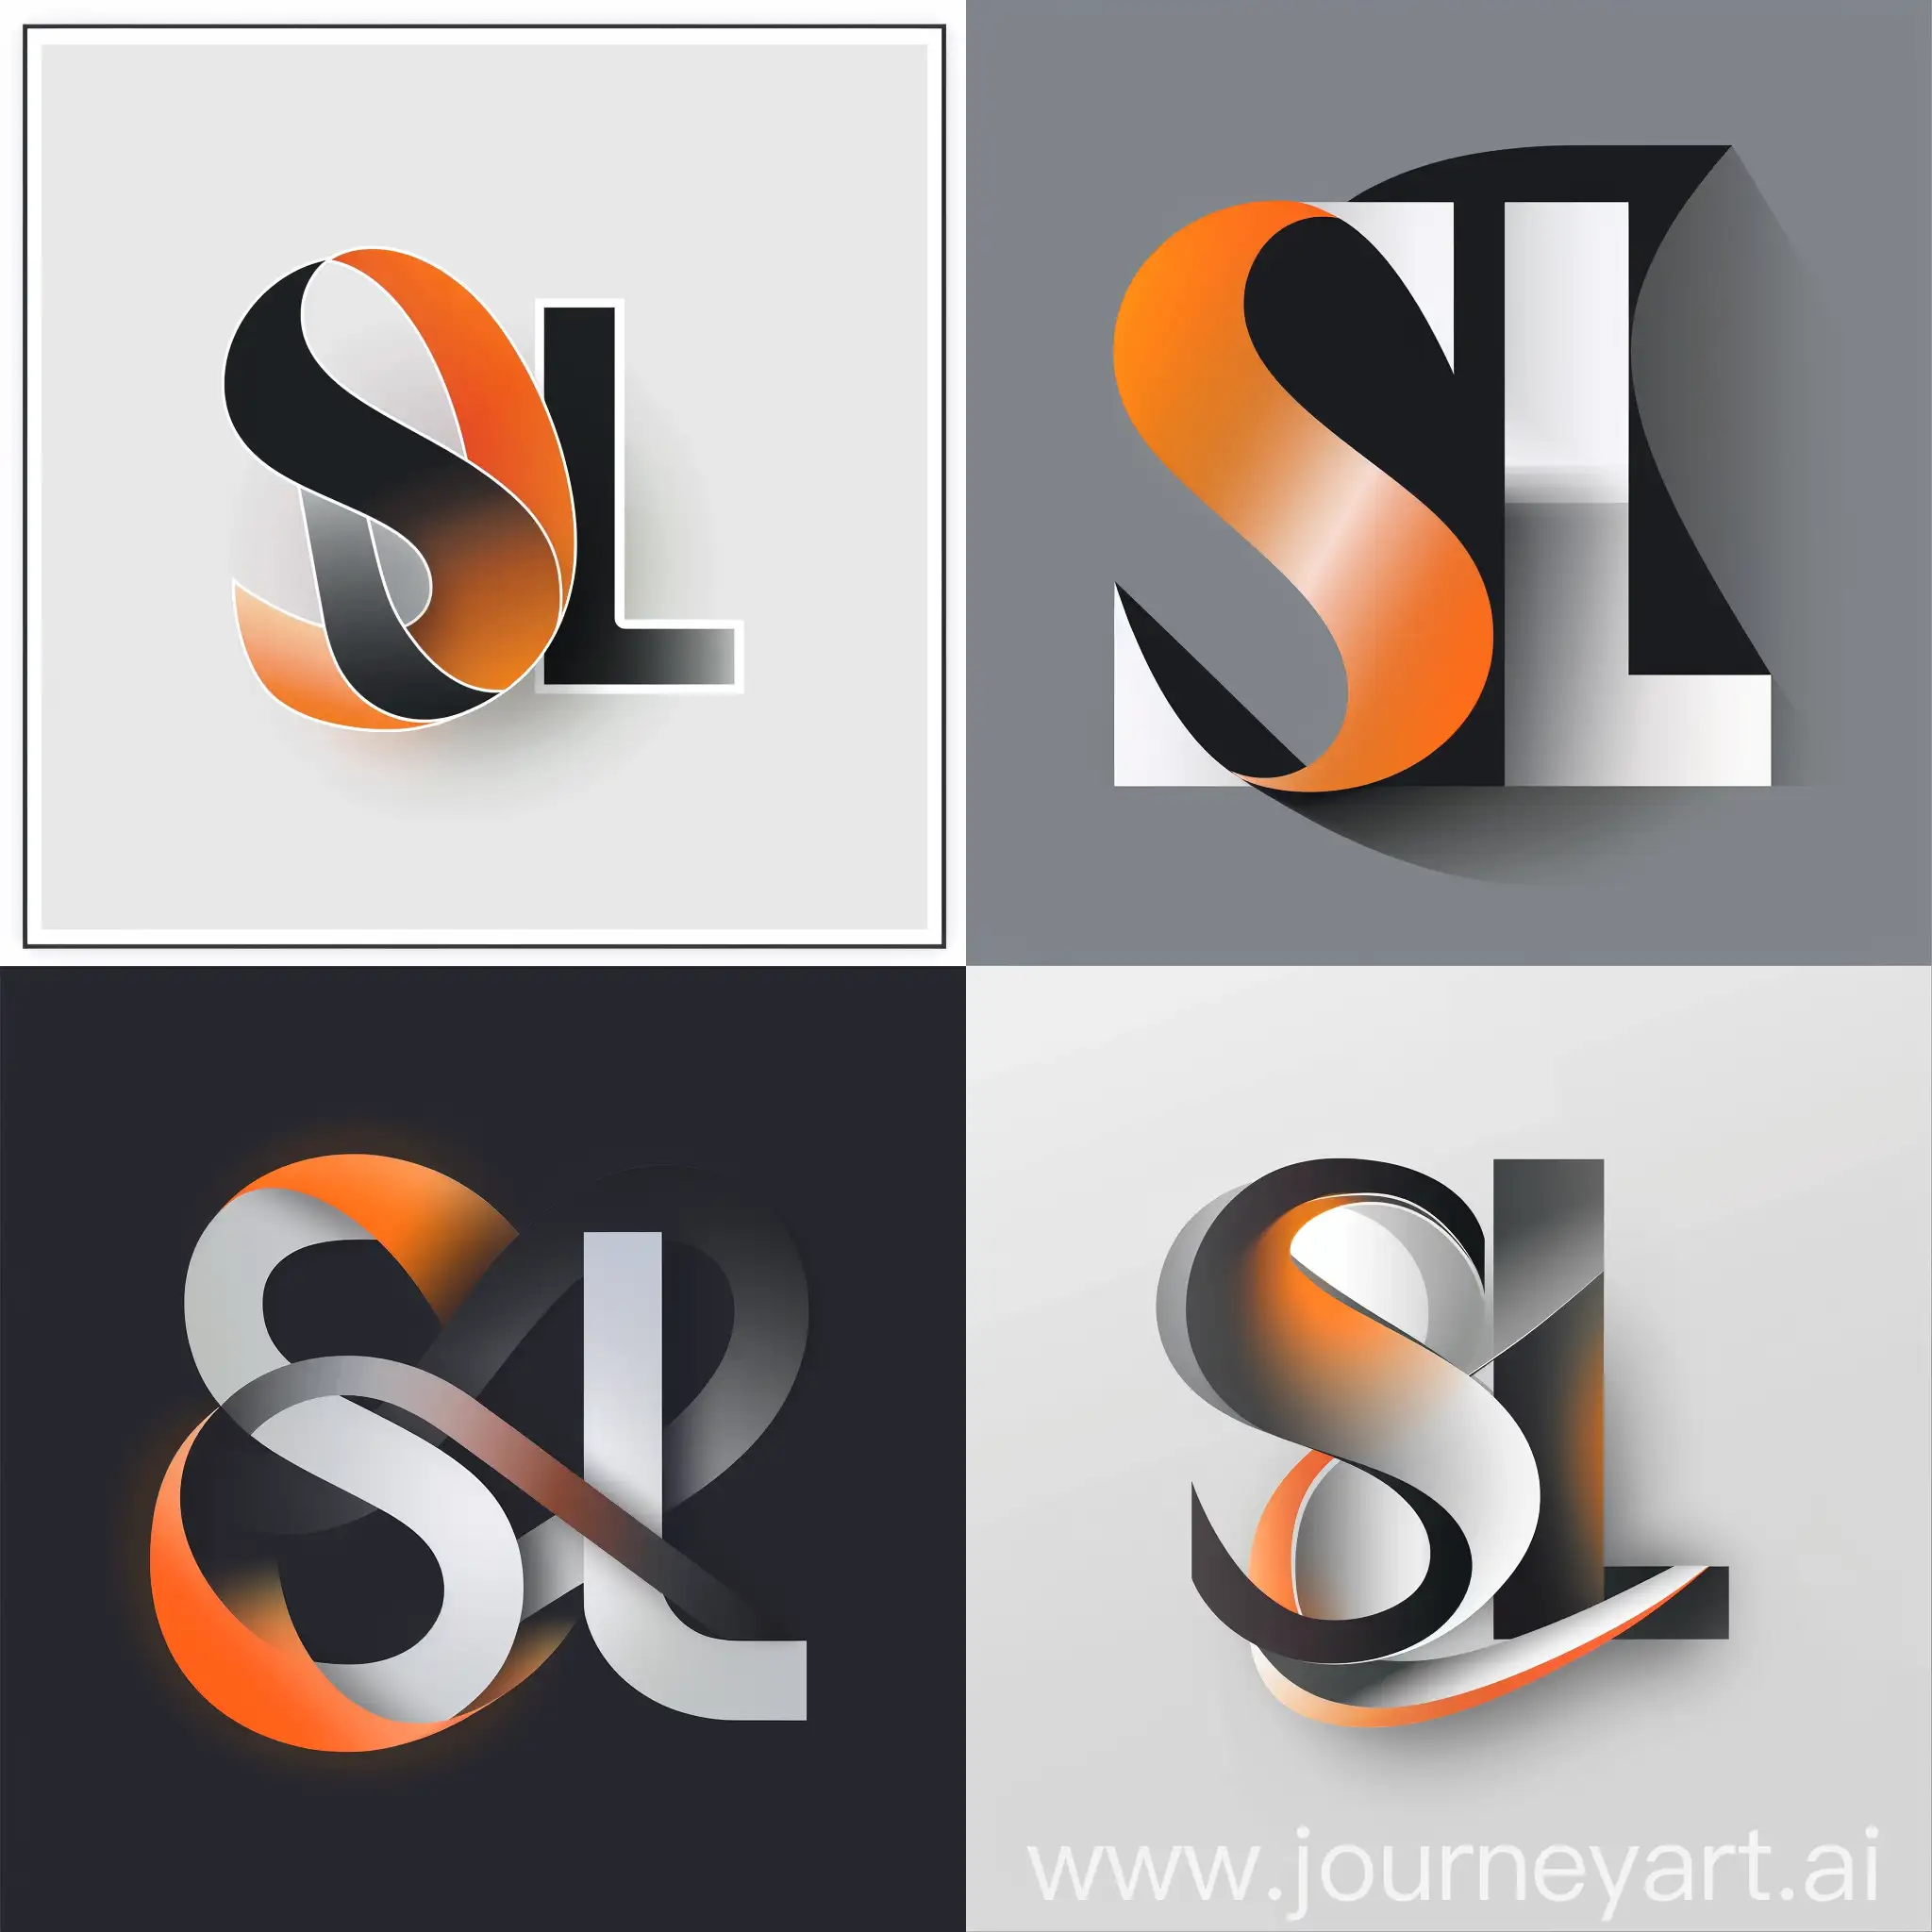 Логотип "SL"интересный градиентный эффект к буквам S и L, абстрактный графический элемент между букв, который будет ассоциироваться со сферой деятельности компании или ее целями, цветовую гамму черно-серую белую и оранжевую